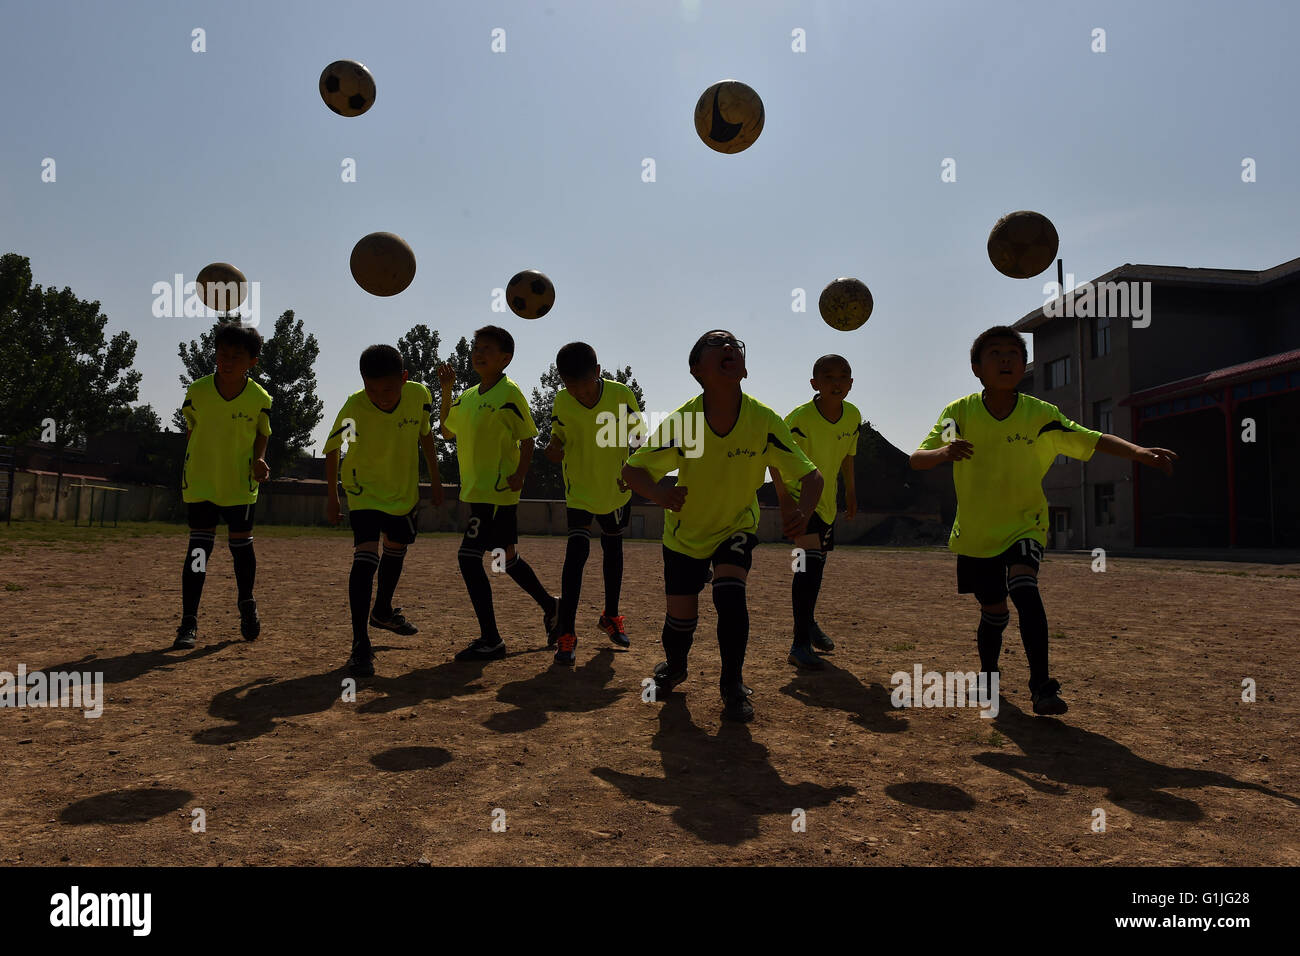 (160517)--SHANXI, 17. Mai 2016 (Xinhua)--Studenten der Sima-Grundschule üben Fußball in Xiaoyi Stadt, Nord-China Shanxi Provinz, 17. Mai 2016. Viele Dorfschulen haben weitere Sportkurse während dieser Jahre einrichten wie sie ermutigt werden, mehr Sportunterricht hinzufügen, wenn die Bedingungen dies zulassen. Eine 2014-Studie ergab, dass 23 Prozent der chinesischen Jungen unter 20 Jahren übergewichtig waren oder fettleibig, während die Zahl lag bei 14 Prozent für Mädchen.  (Xinhua/Zhan Yan) (Wyl) Stockfoto